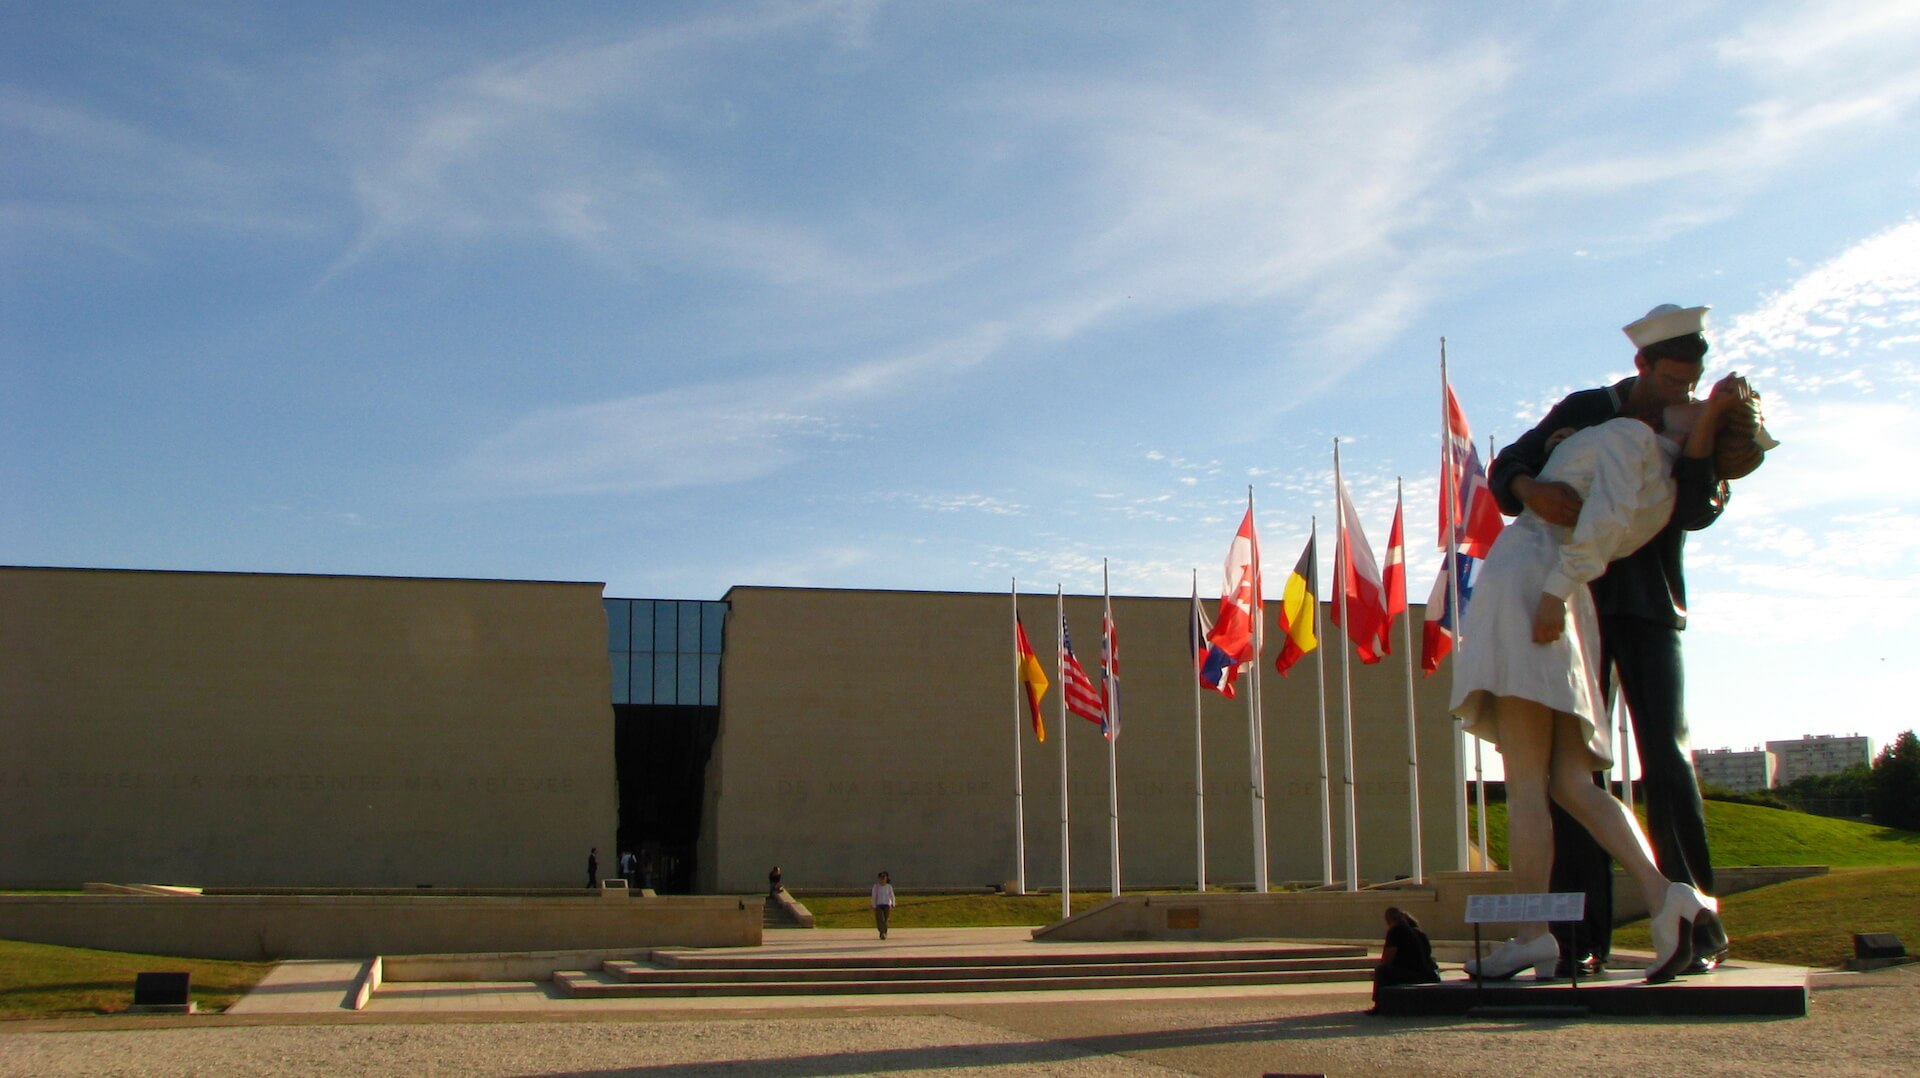 Memorial de Caen